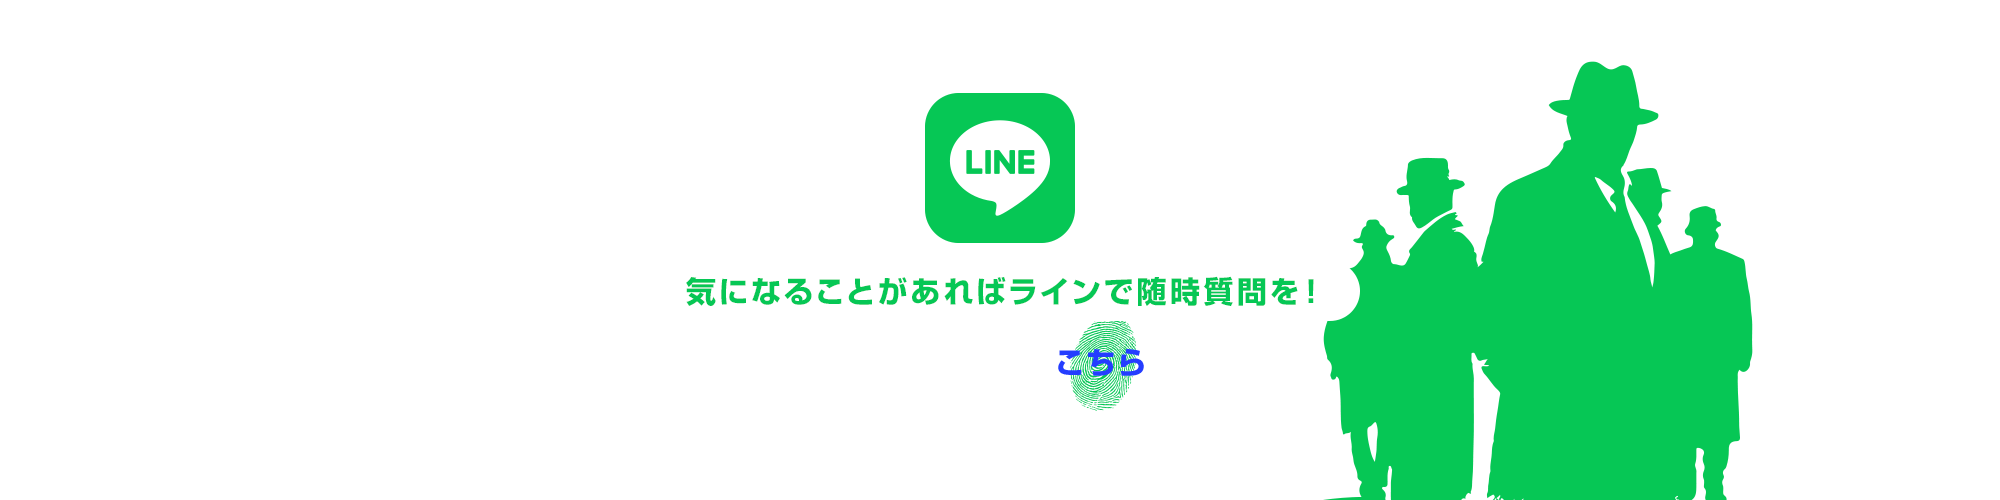 bnr_line